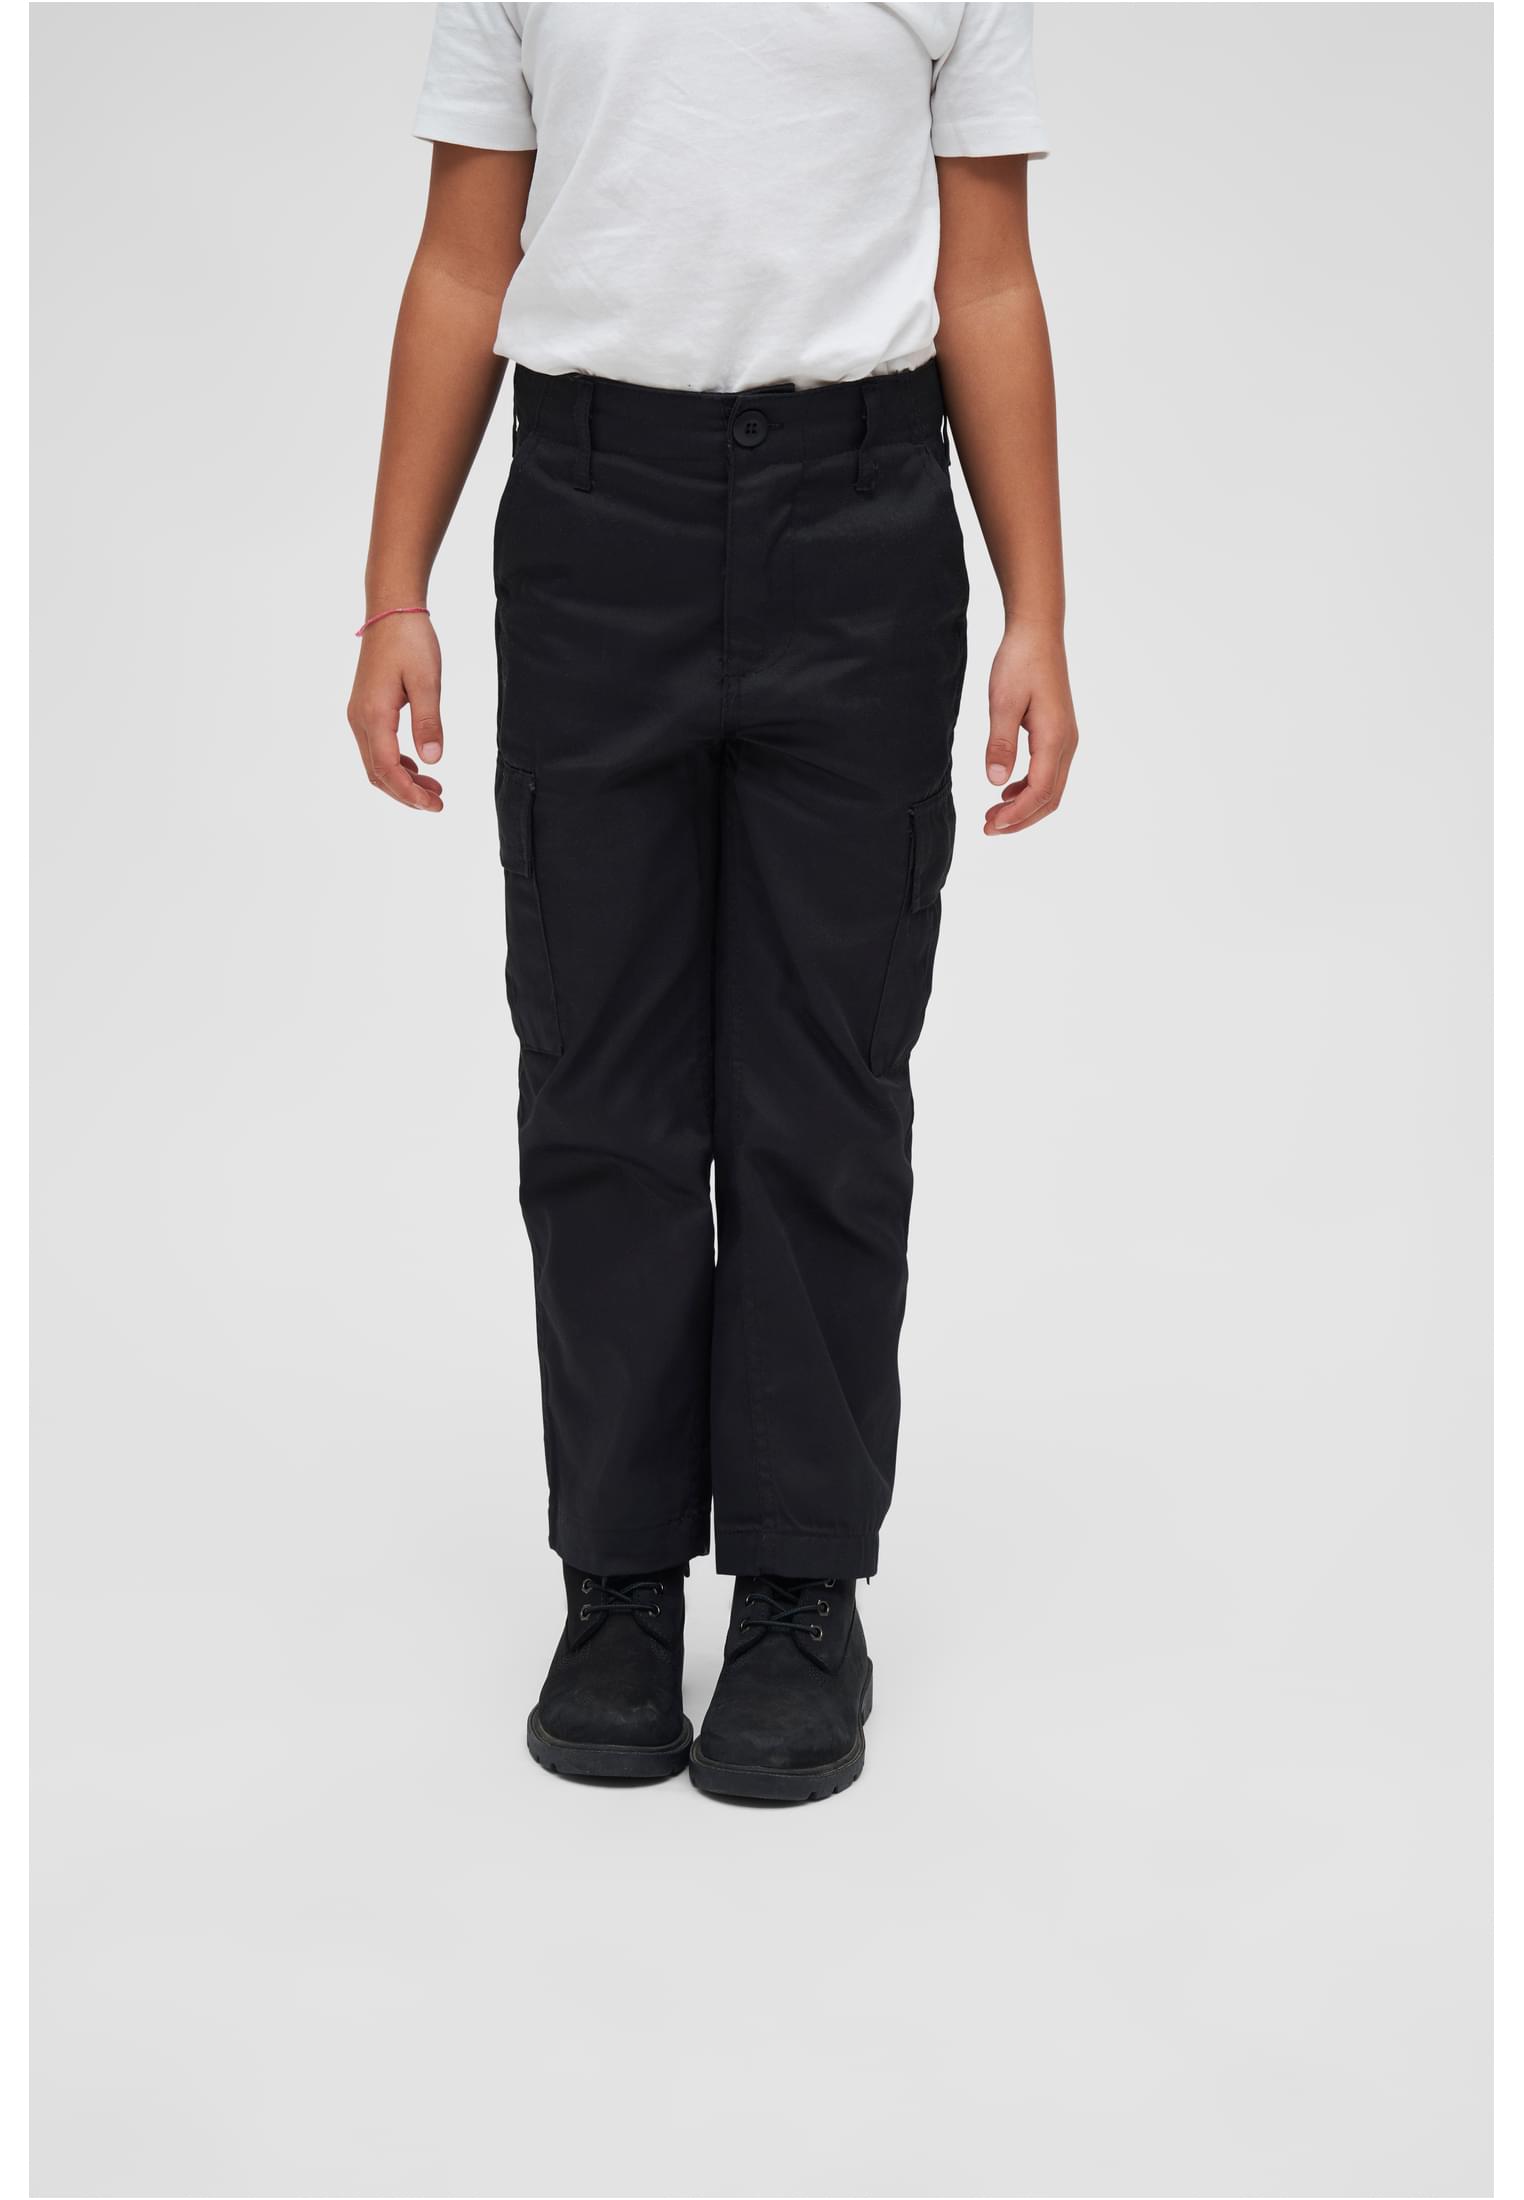 Children's Trousers US Ranger black